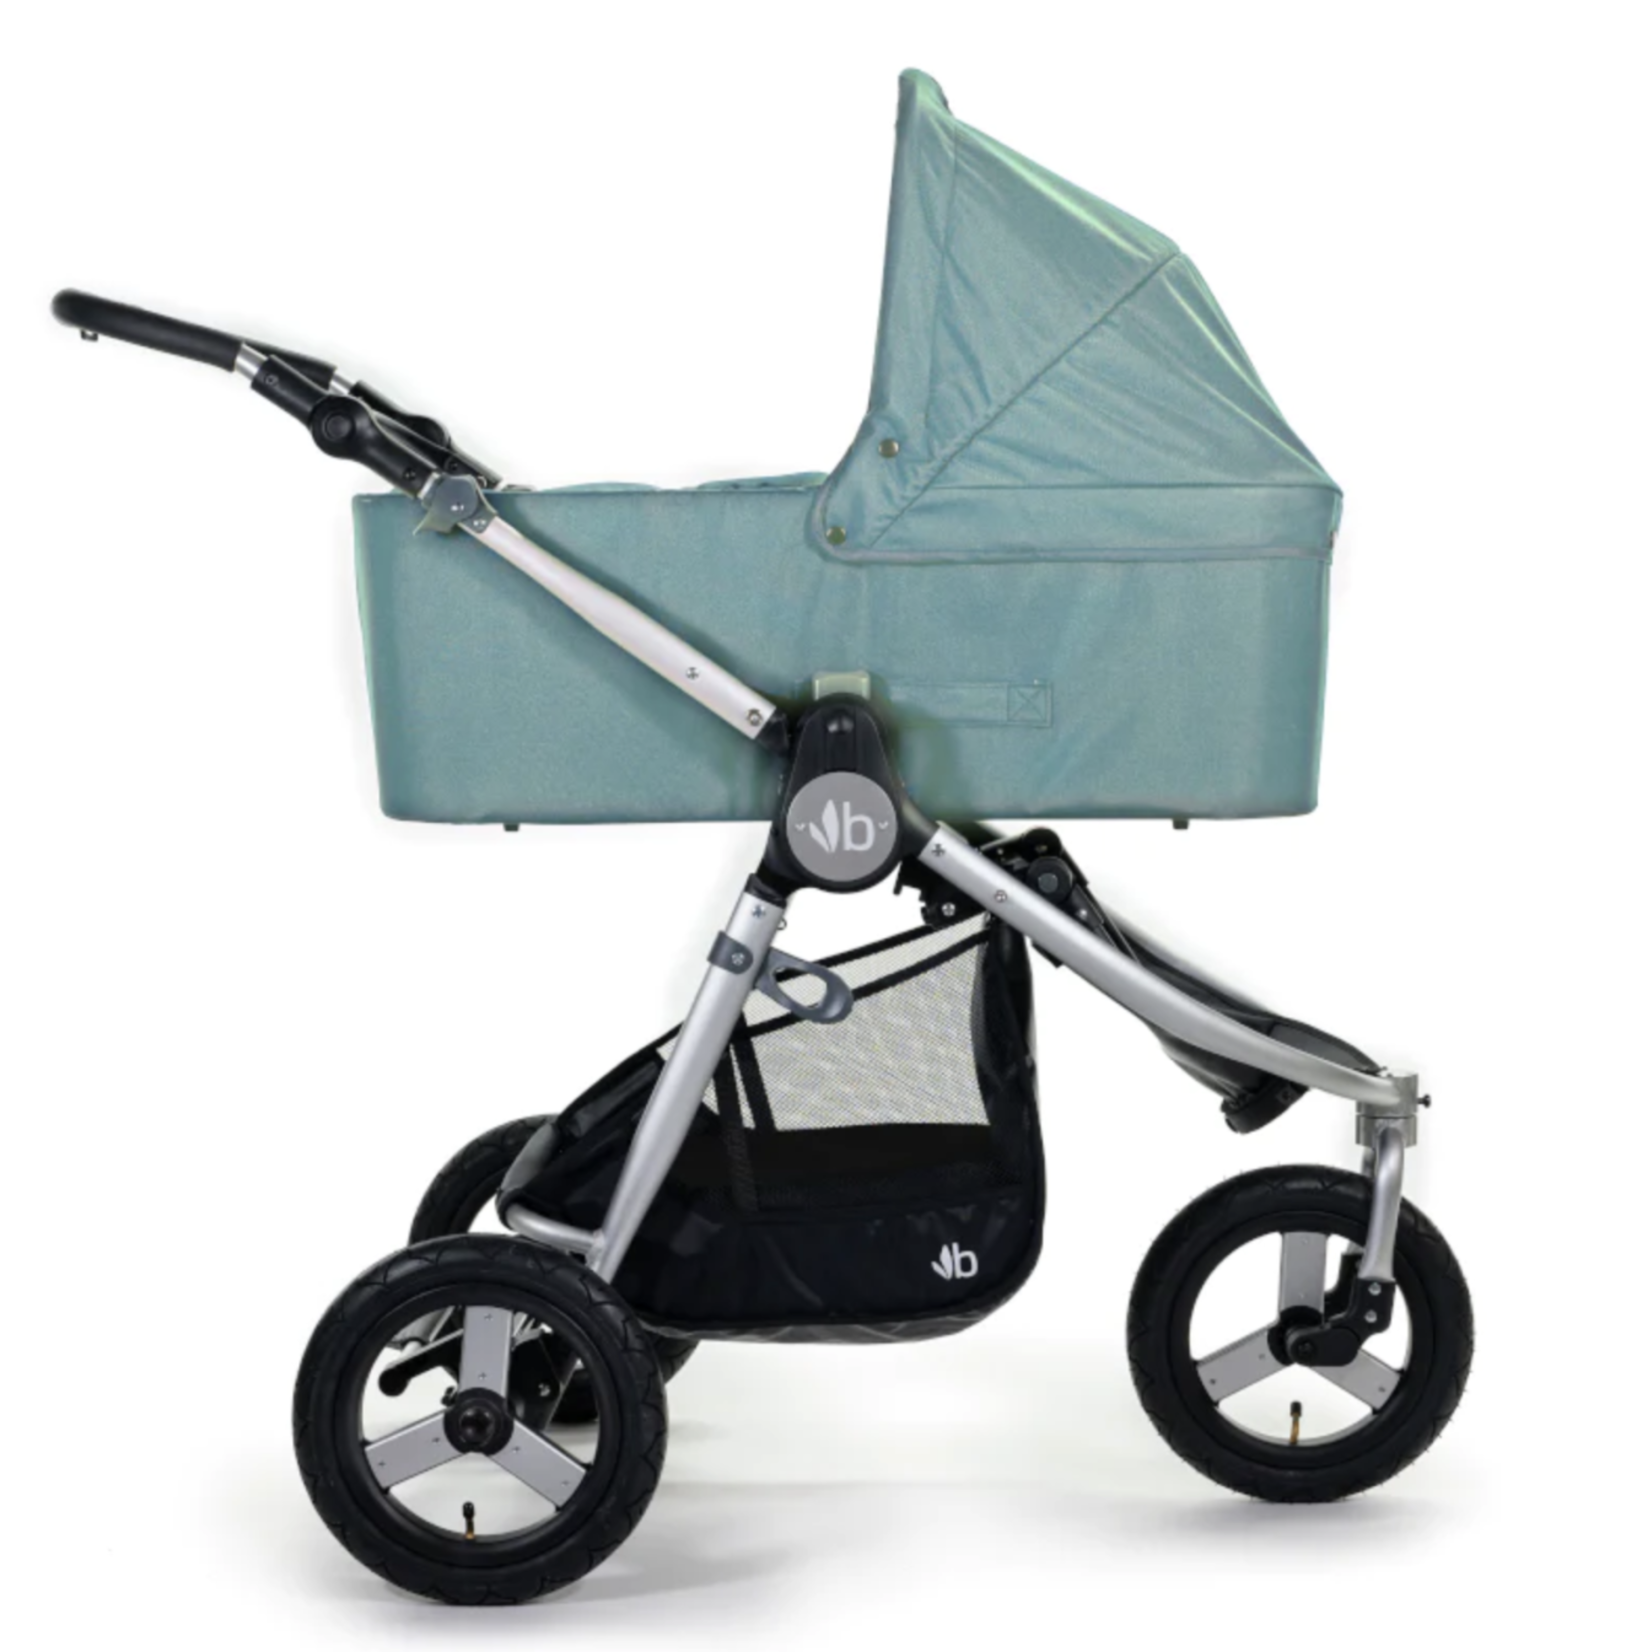 Bumbleride Indie 3 wheel stroller-Sea Glass